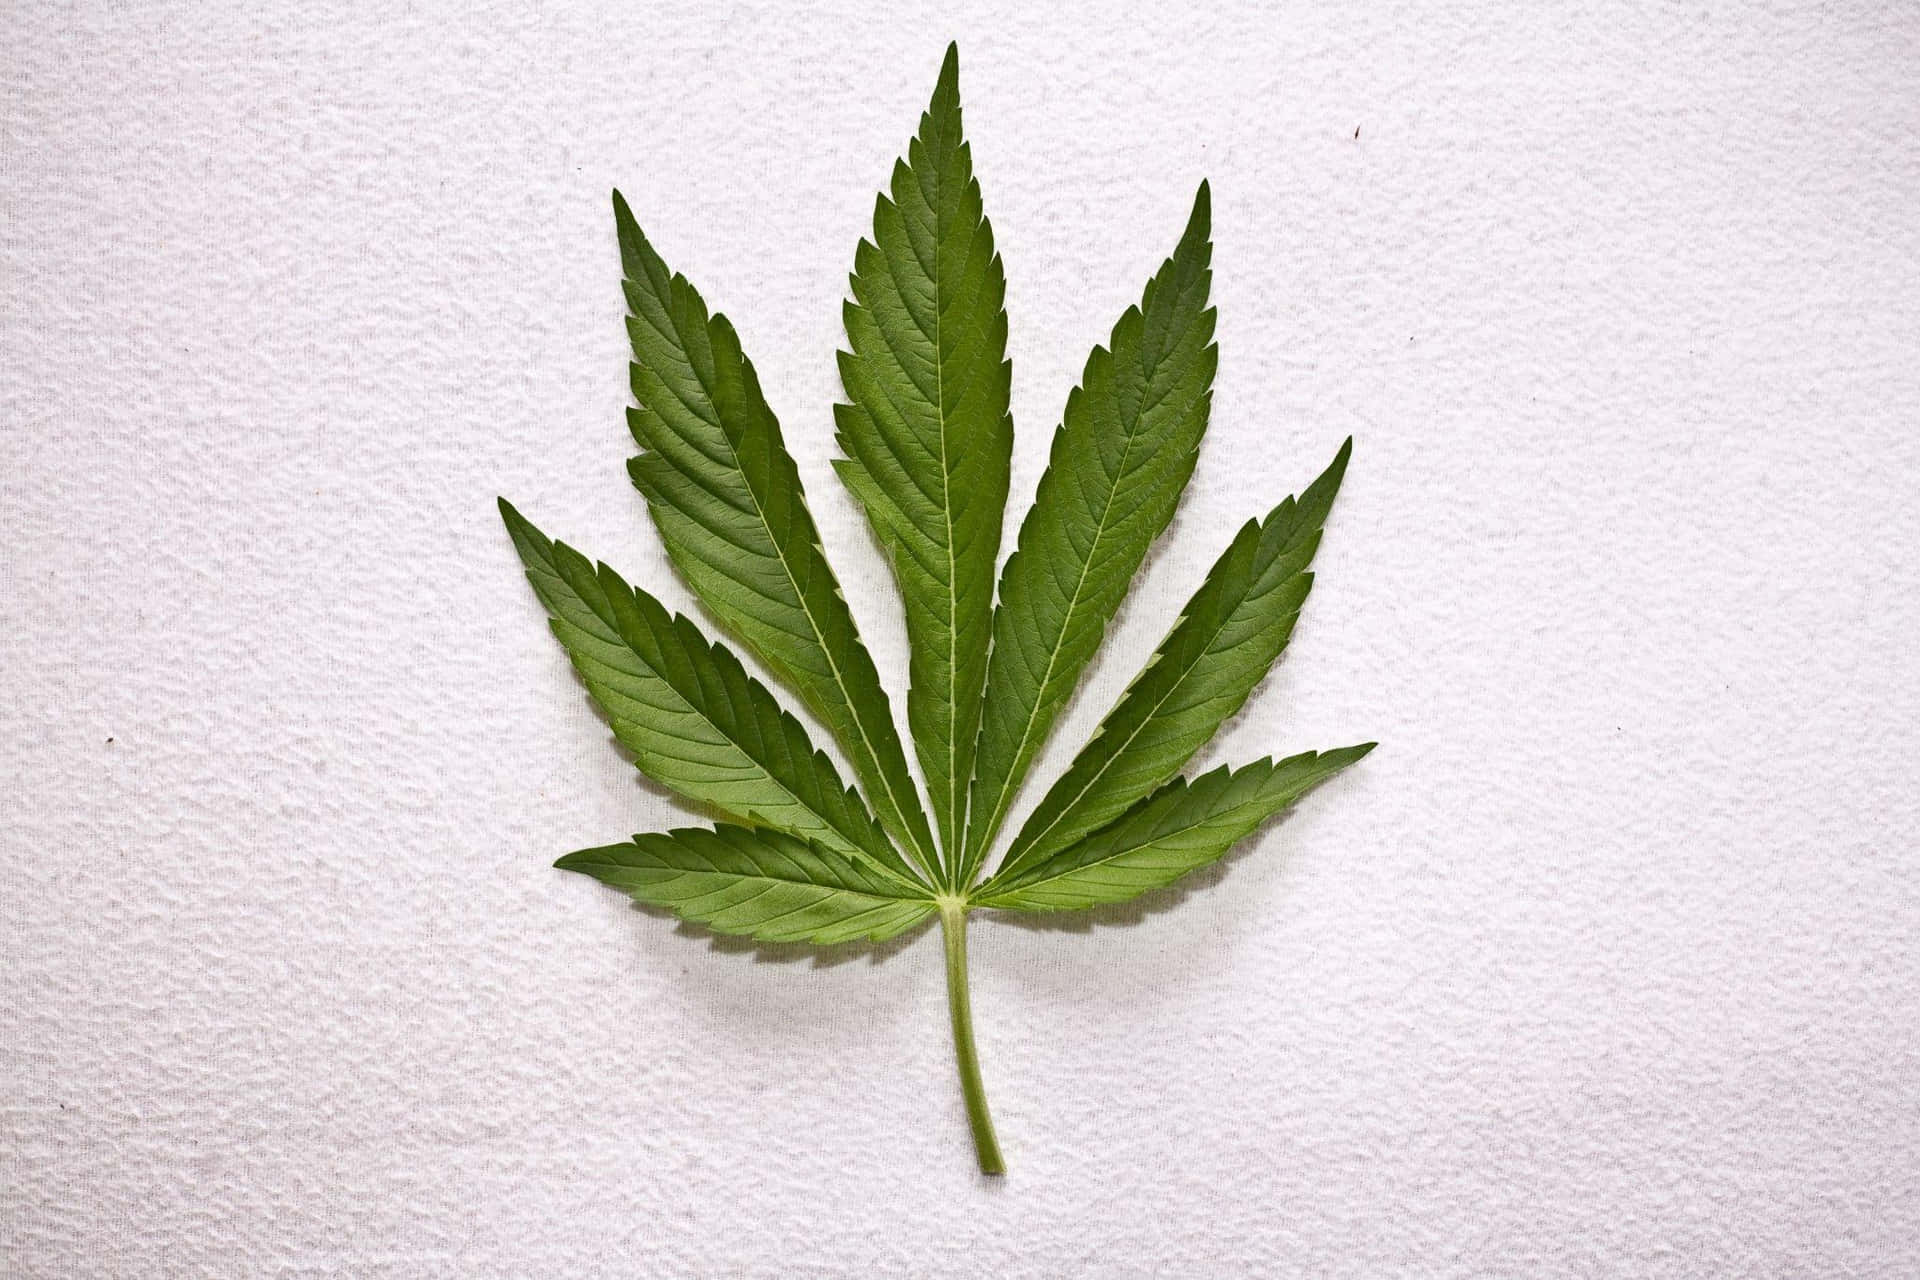 Productosde Cannabis De Calidad Siendo Inspeccionados